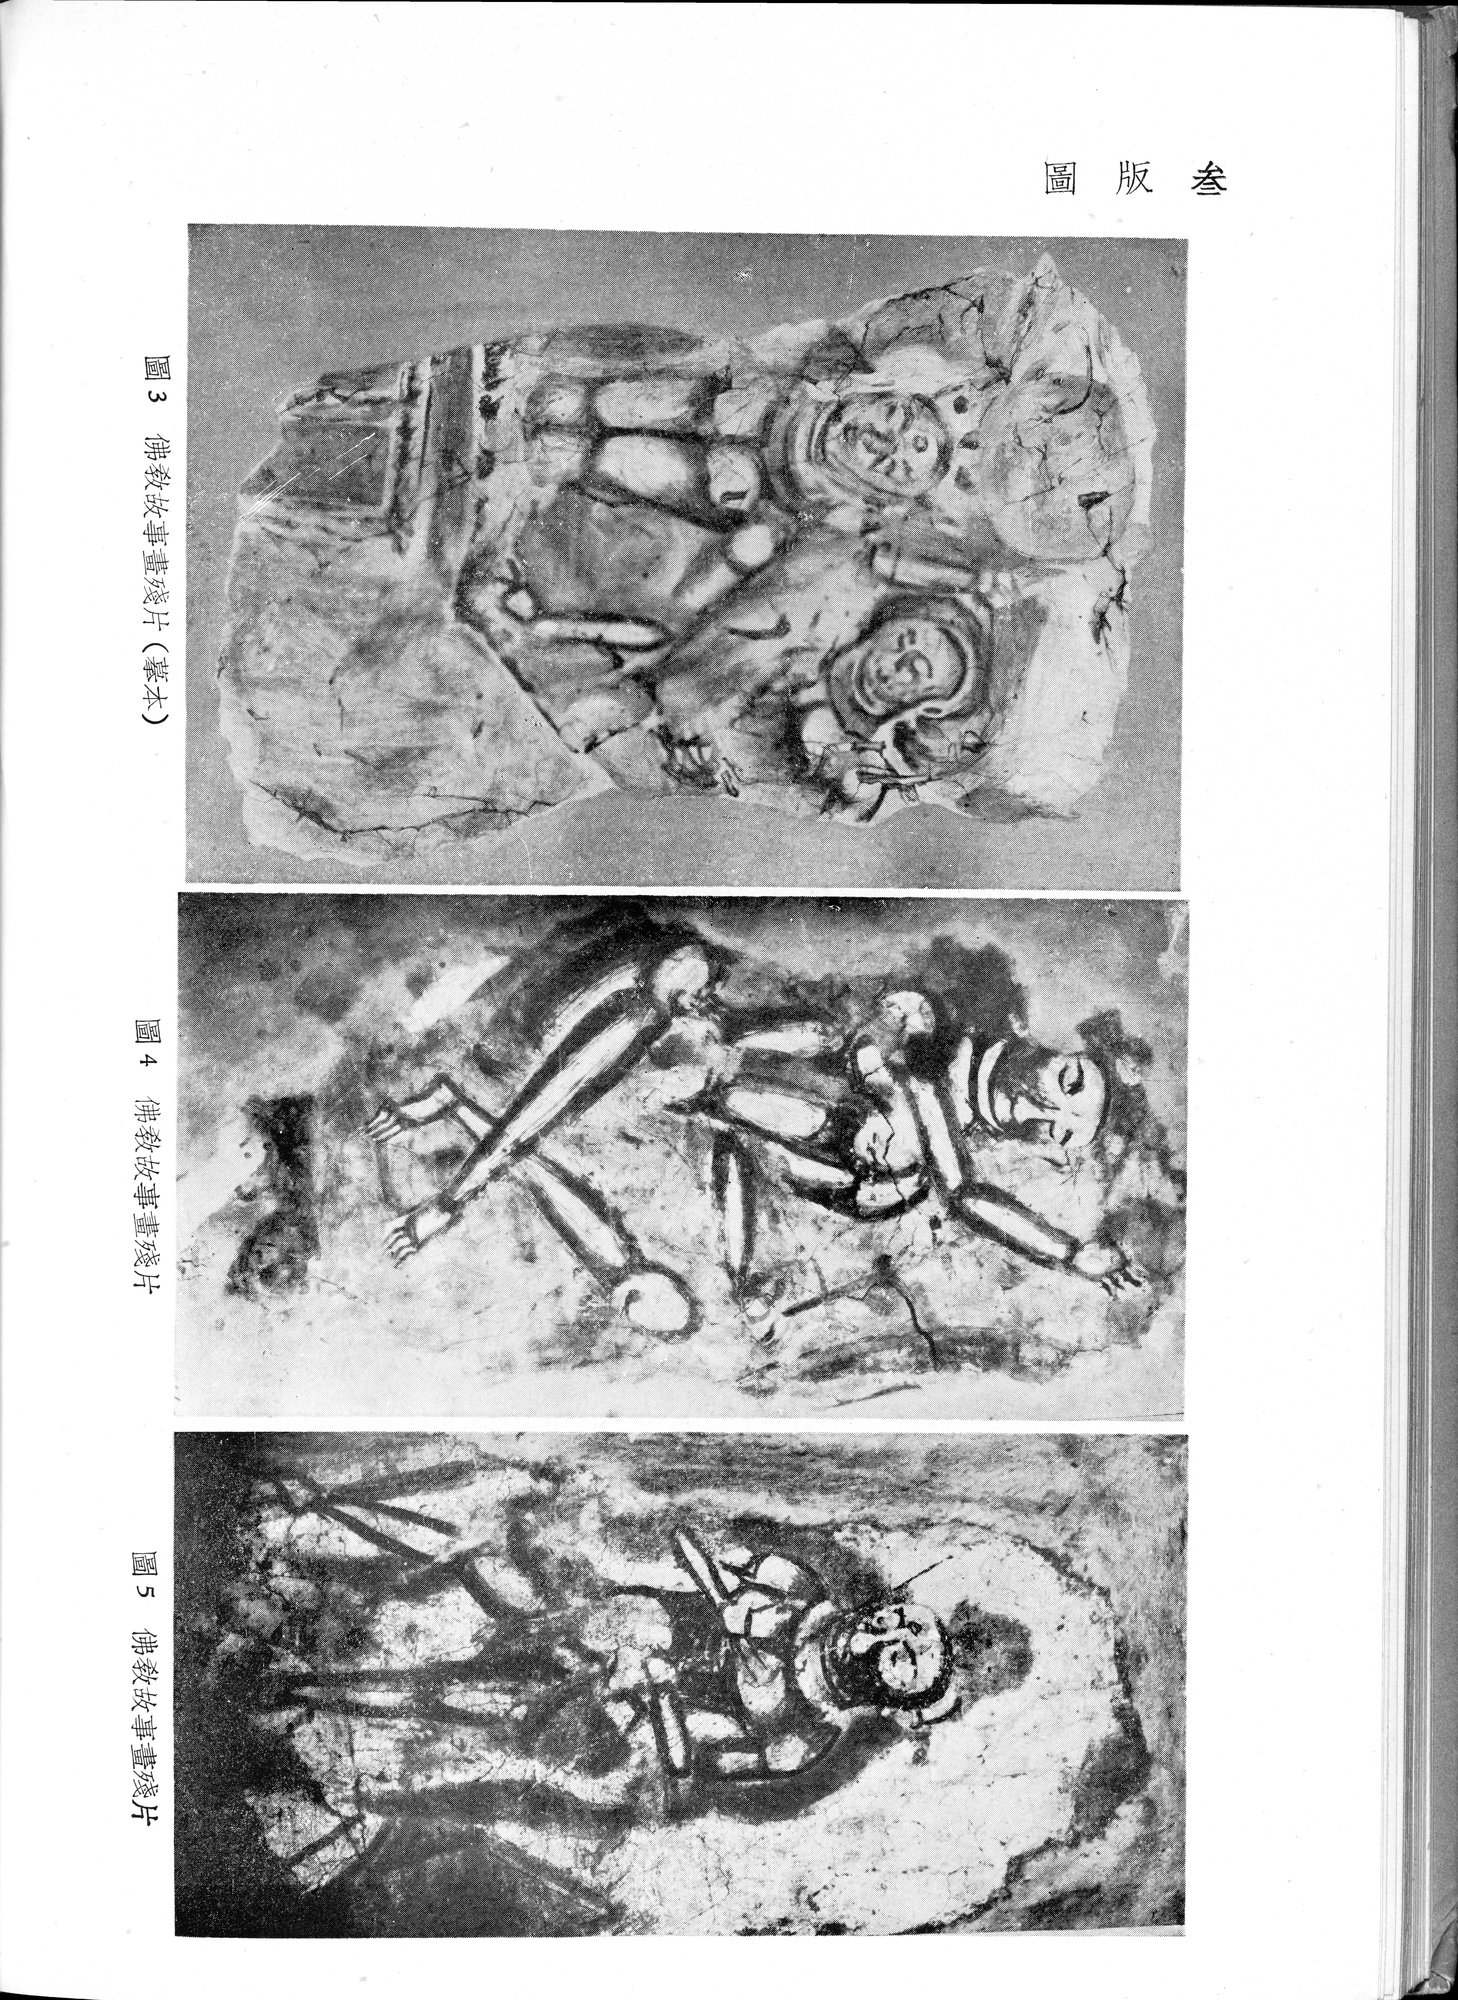 塔里木盆地考古記 : vol.1 / 212 ページ（白黒高解像度画像）